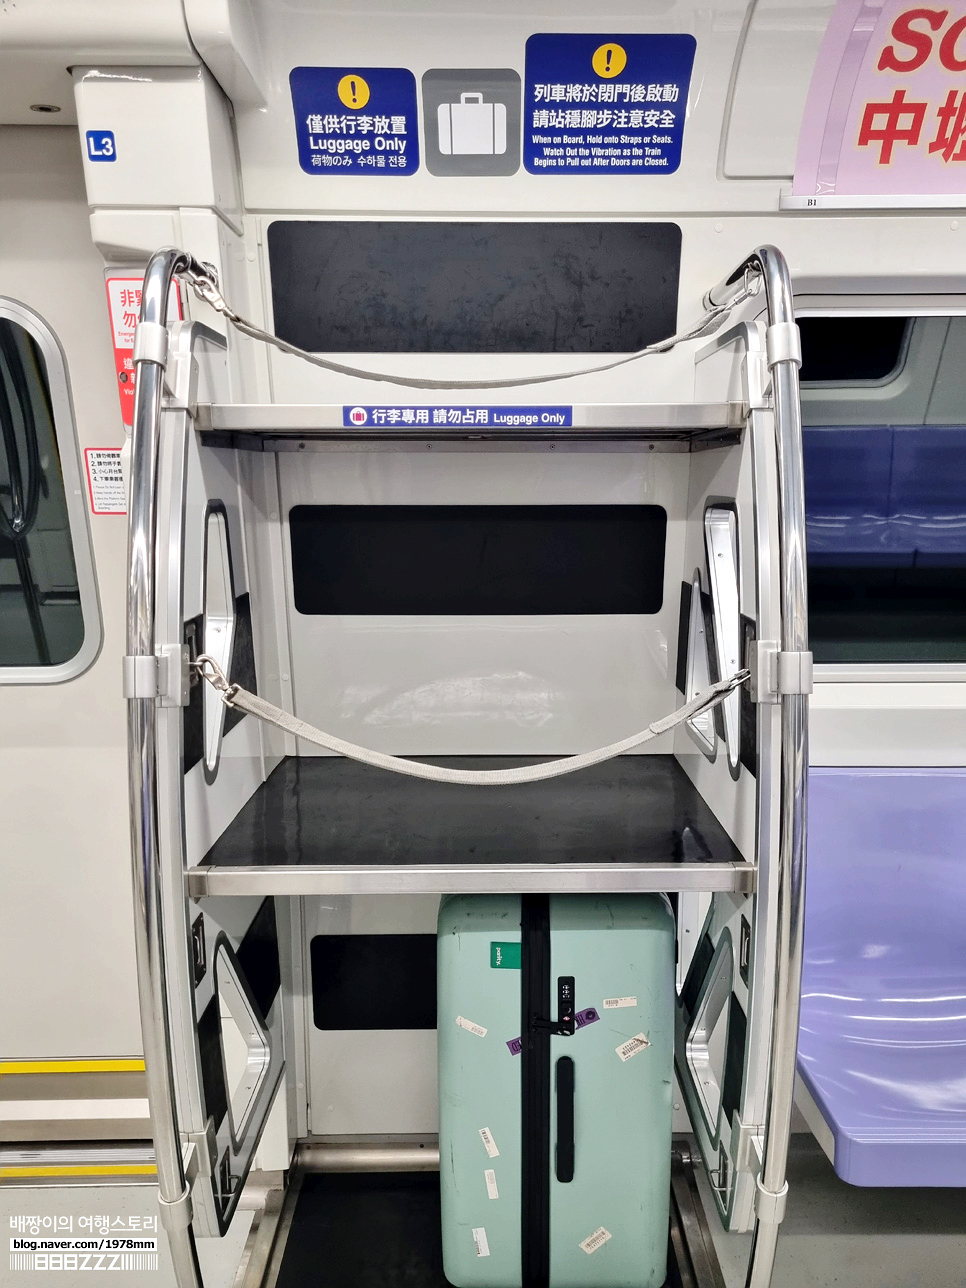 대만 타오위안 공항철도 시내가는법 & 이지카드 충전 할인 타이베이 자유여행 지하철 MRT노선도